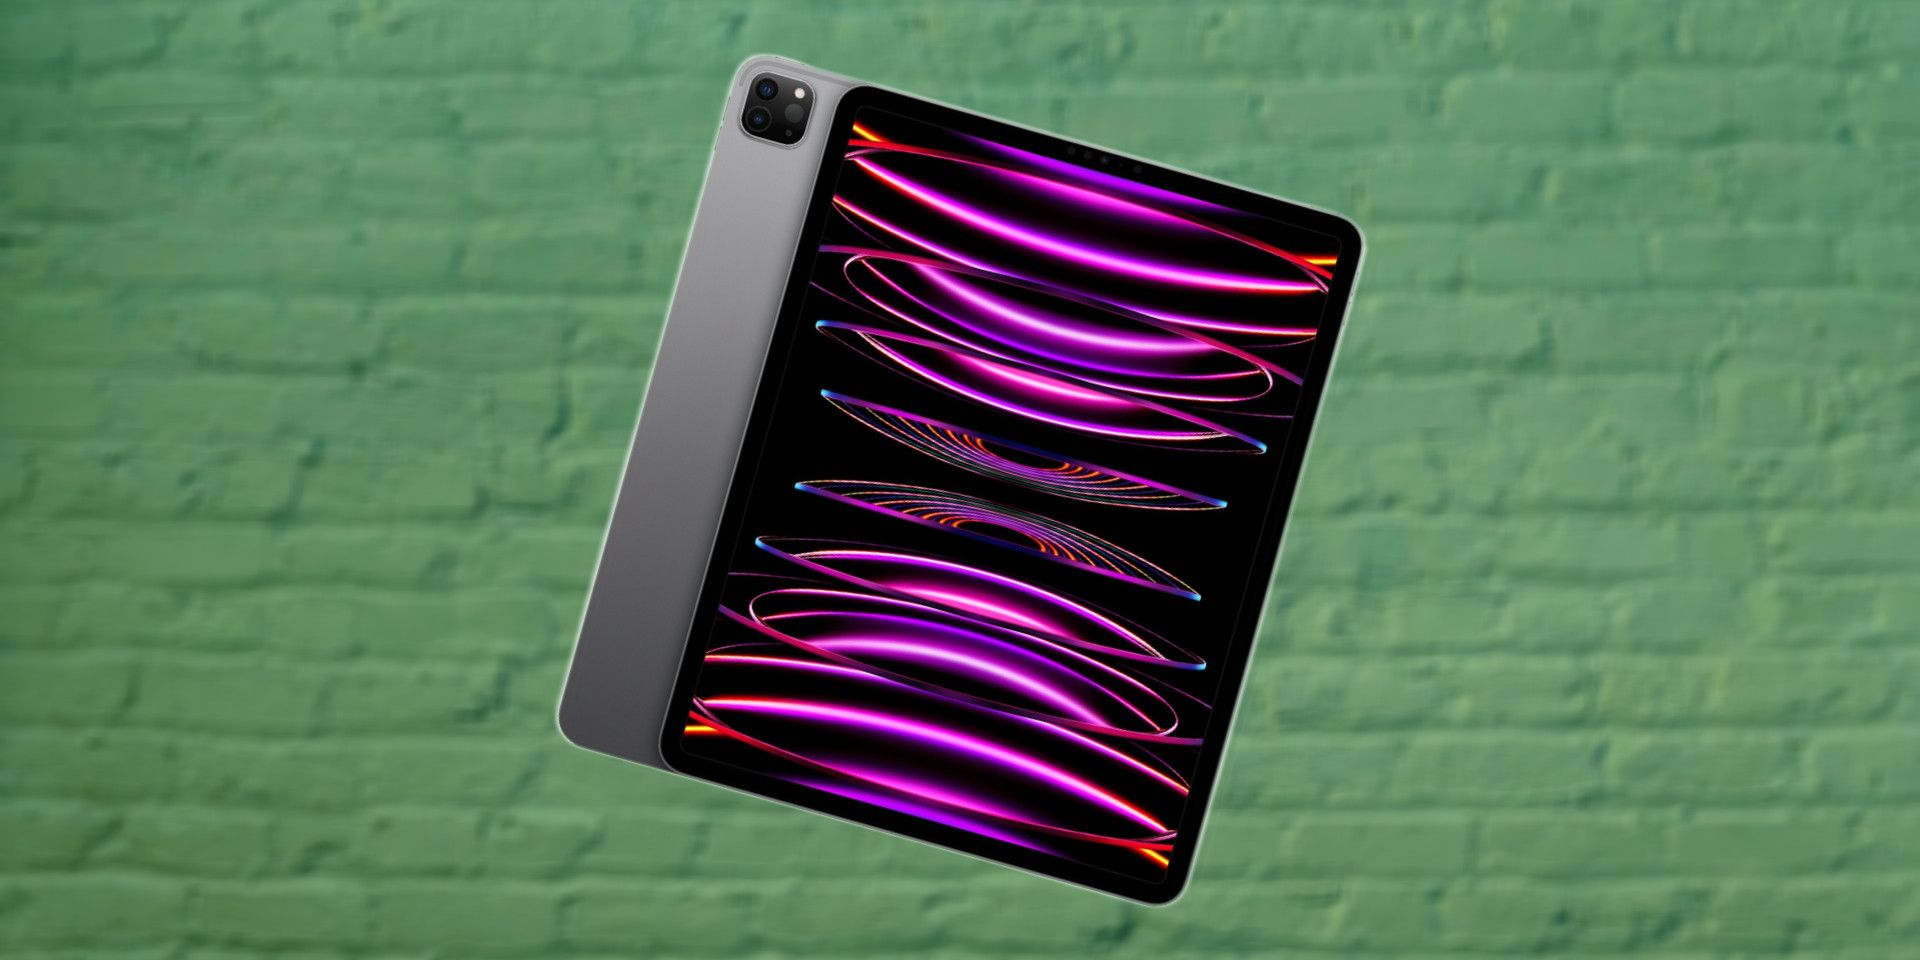 iPad Pro M2 12,9 pouces (2022) avec design radial rose et noir sur fond de brique verte floue